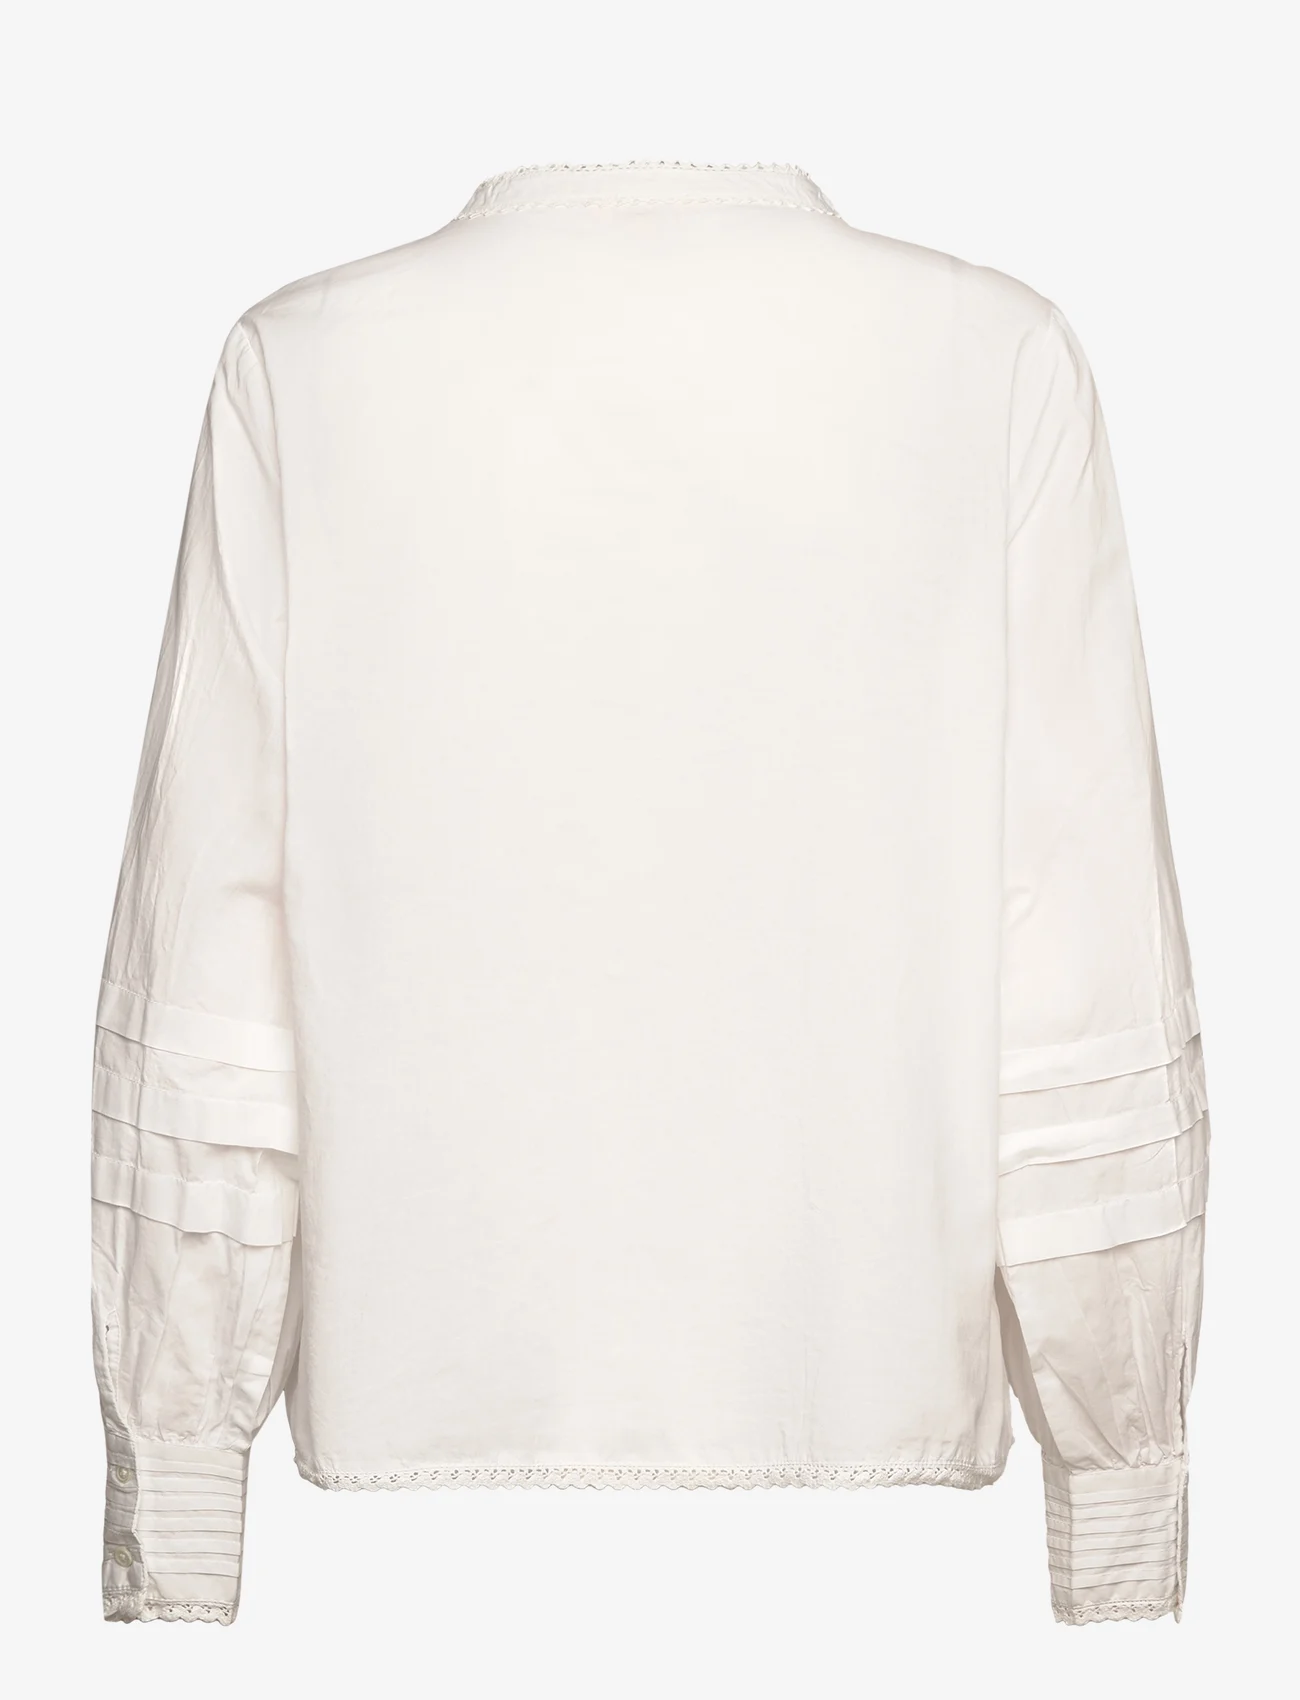 Part Two - EskelinePW SH - pitkähihaiset paidat - bright white - 1